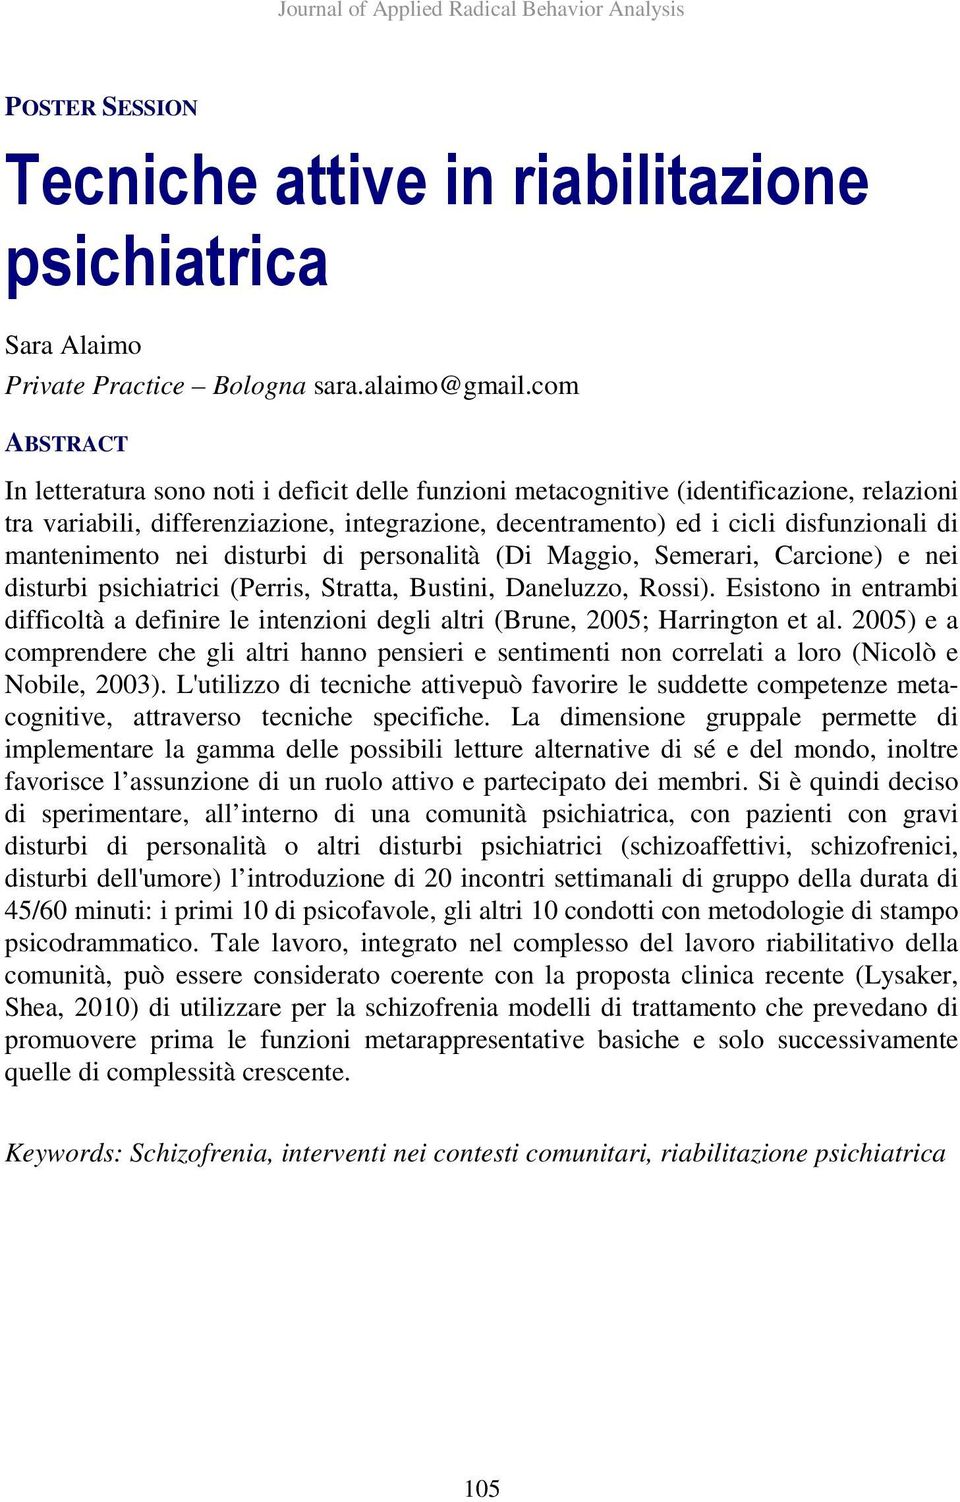 nei disturbi di personalità (Di Maggio, Semerari, Carcione) e nei disturbi psichiatrici (Perris, Stratta, Bustini, Daneluzzo, Rossi).